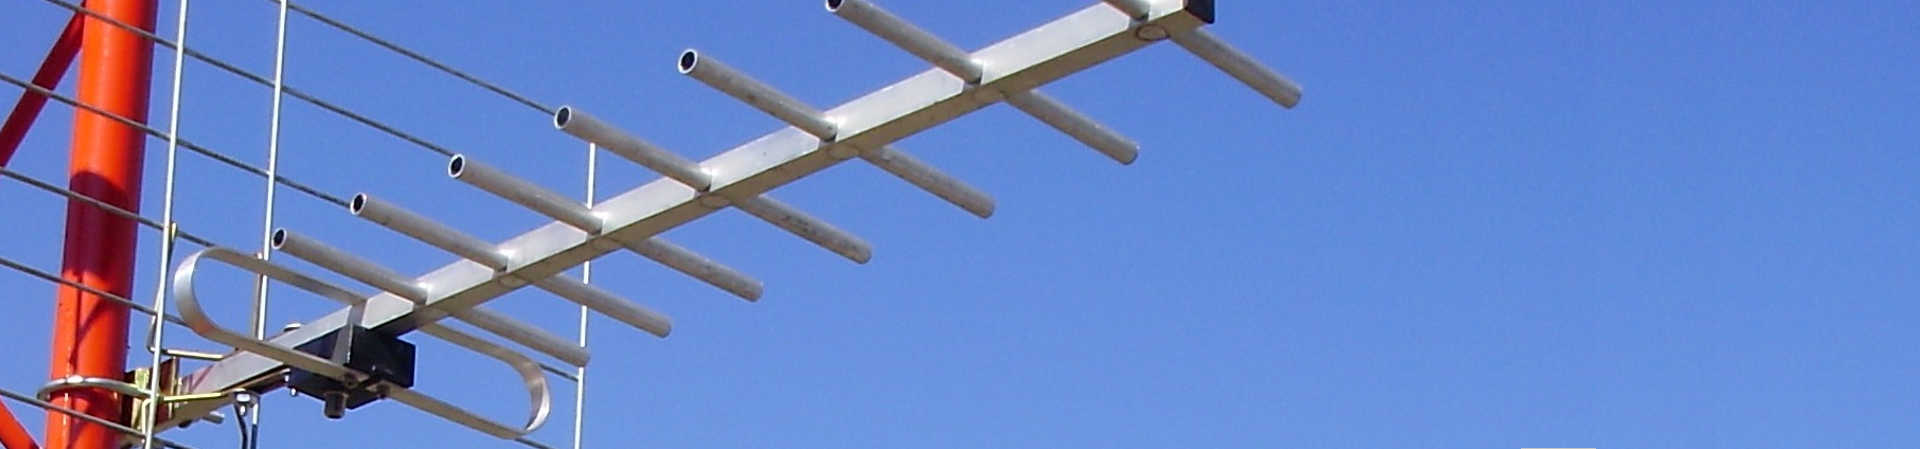 Instalación de antena parabólica en Santander - Antenistasat